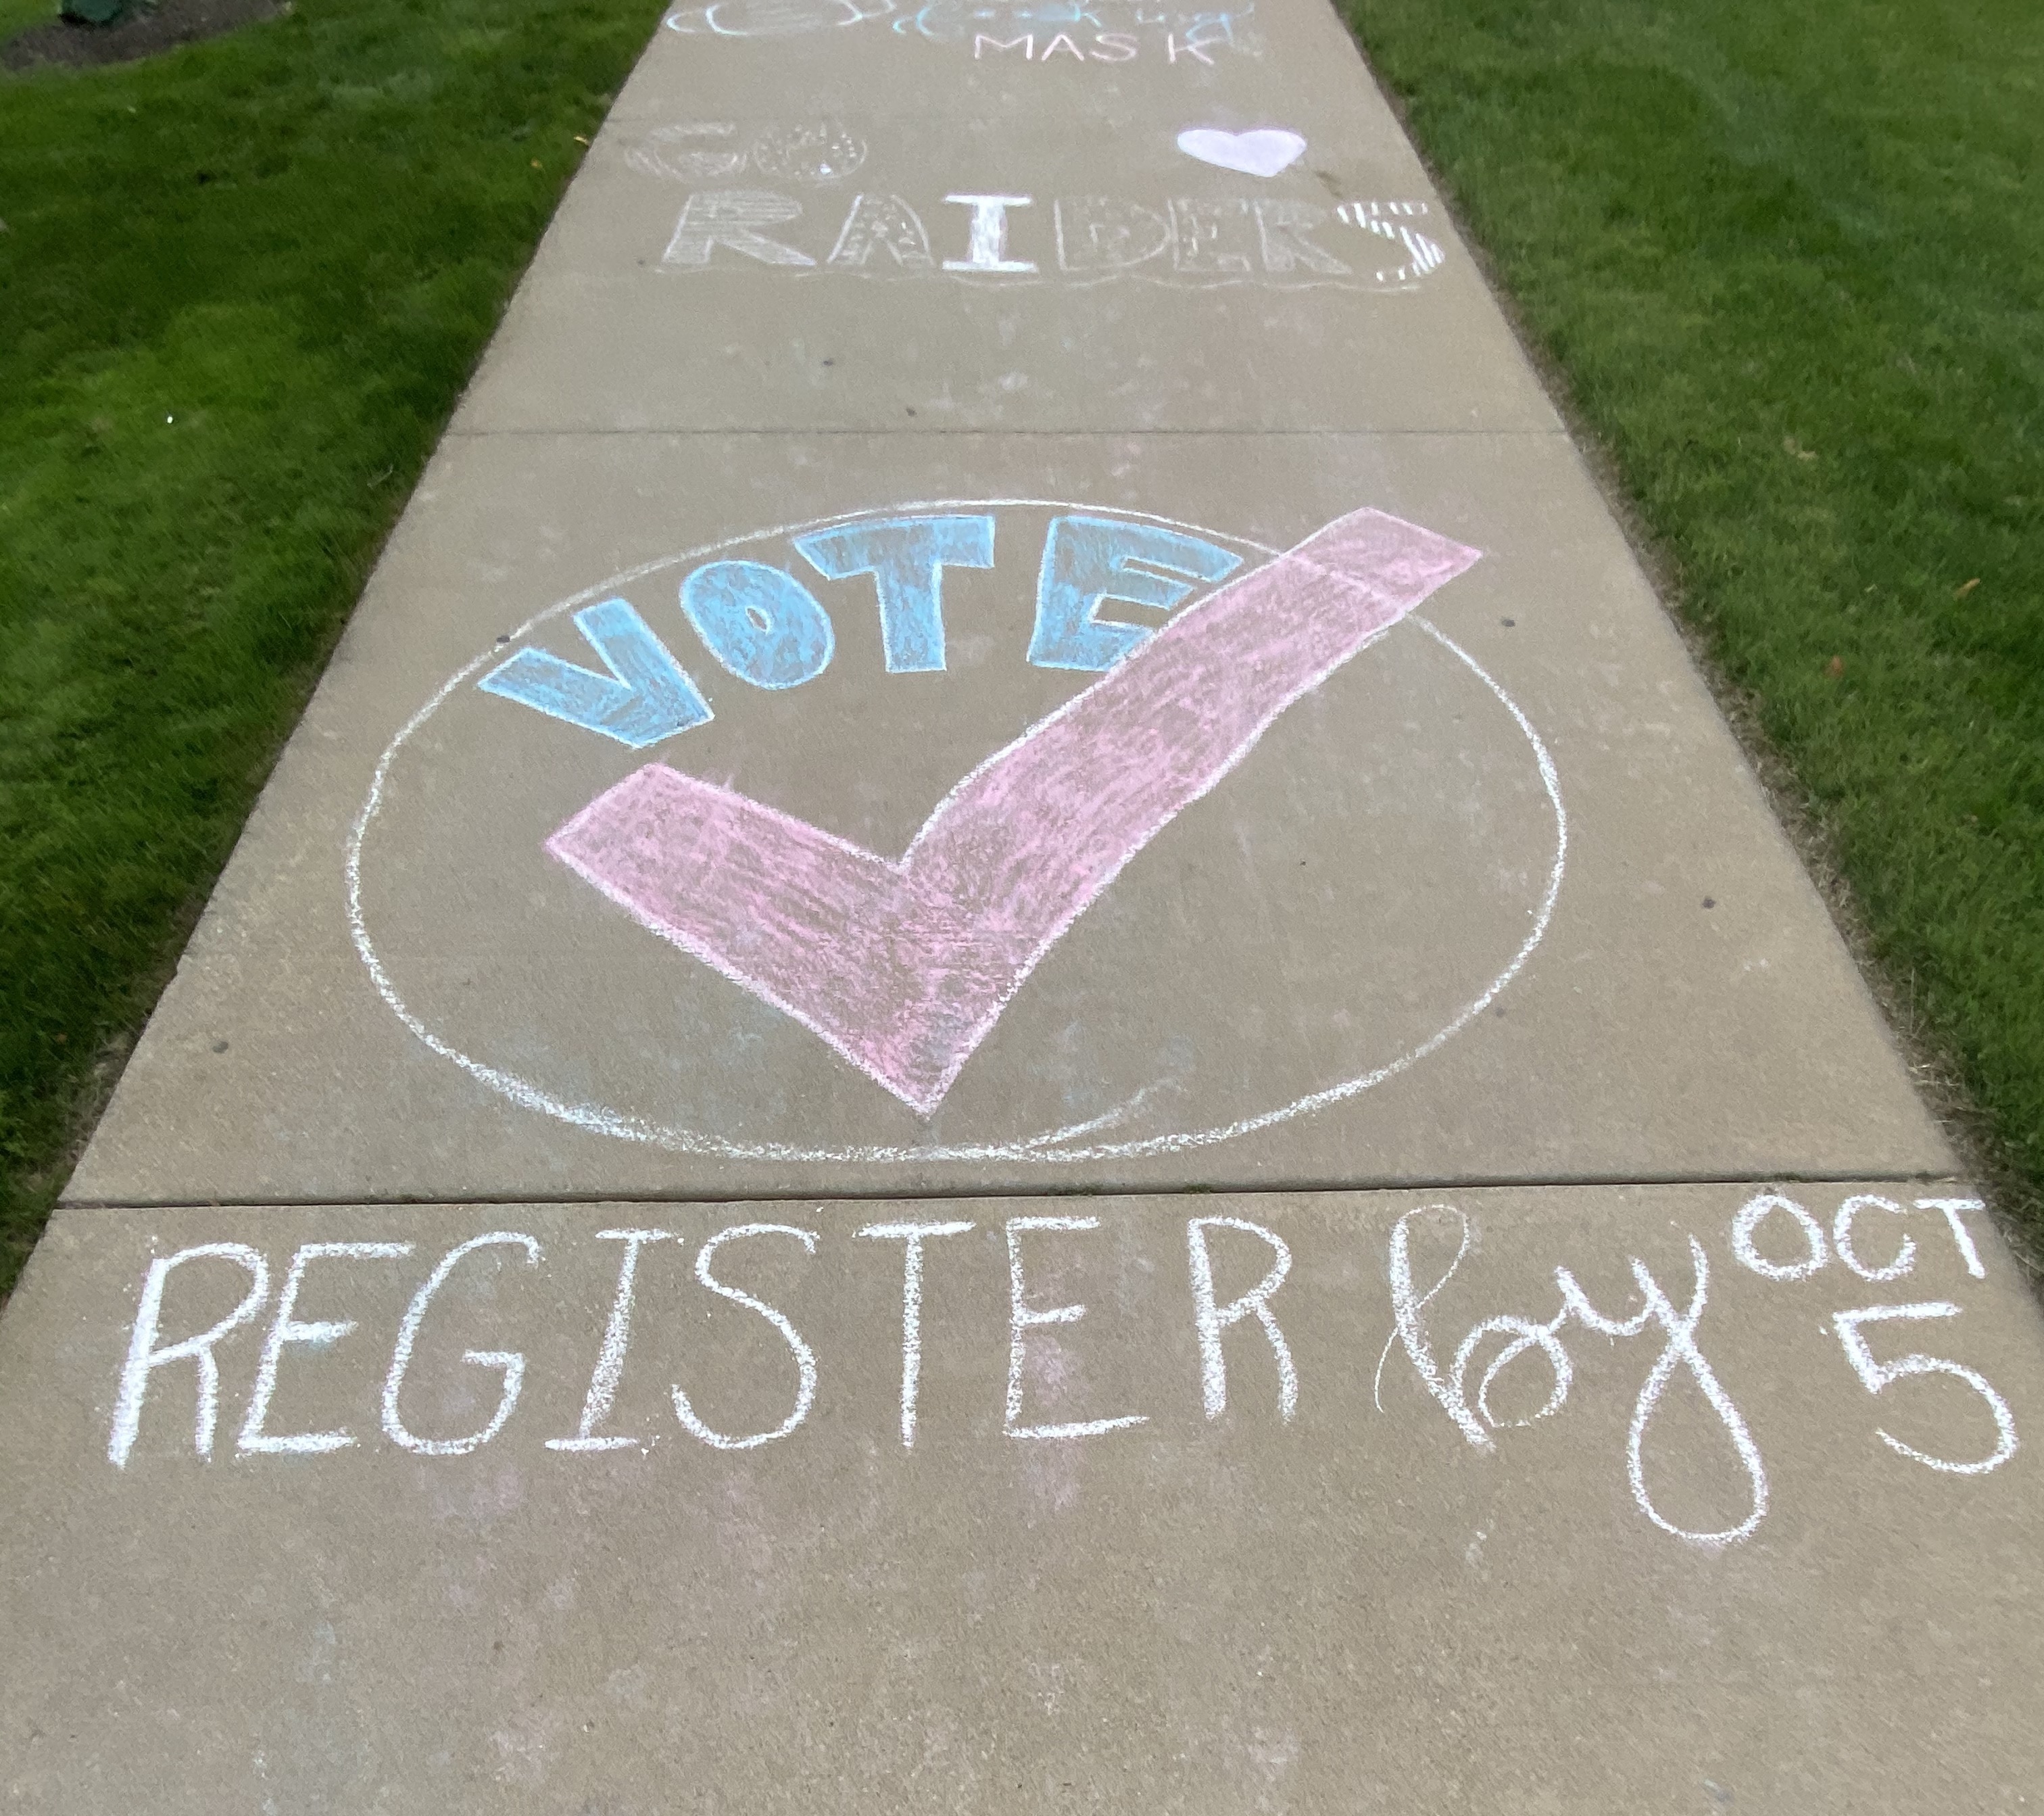 voting graphic drawn on sidewalk in chalk